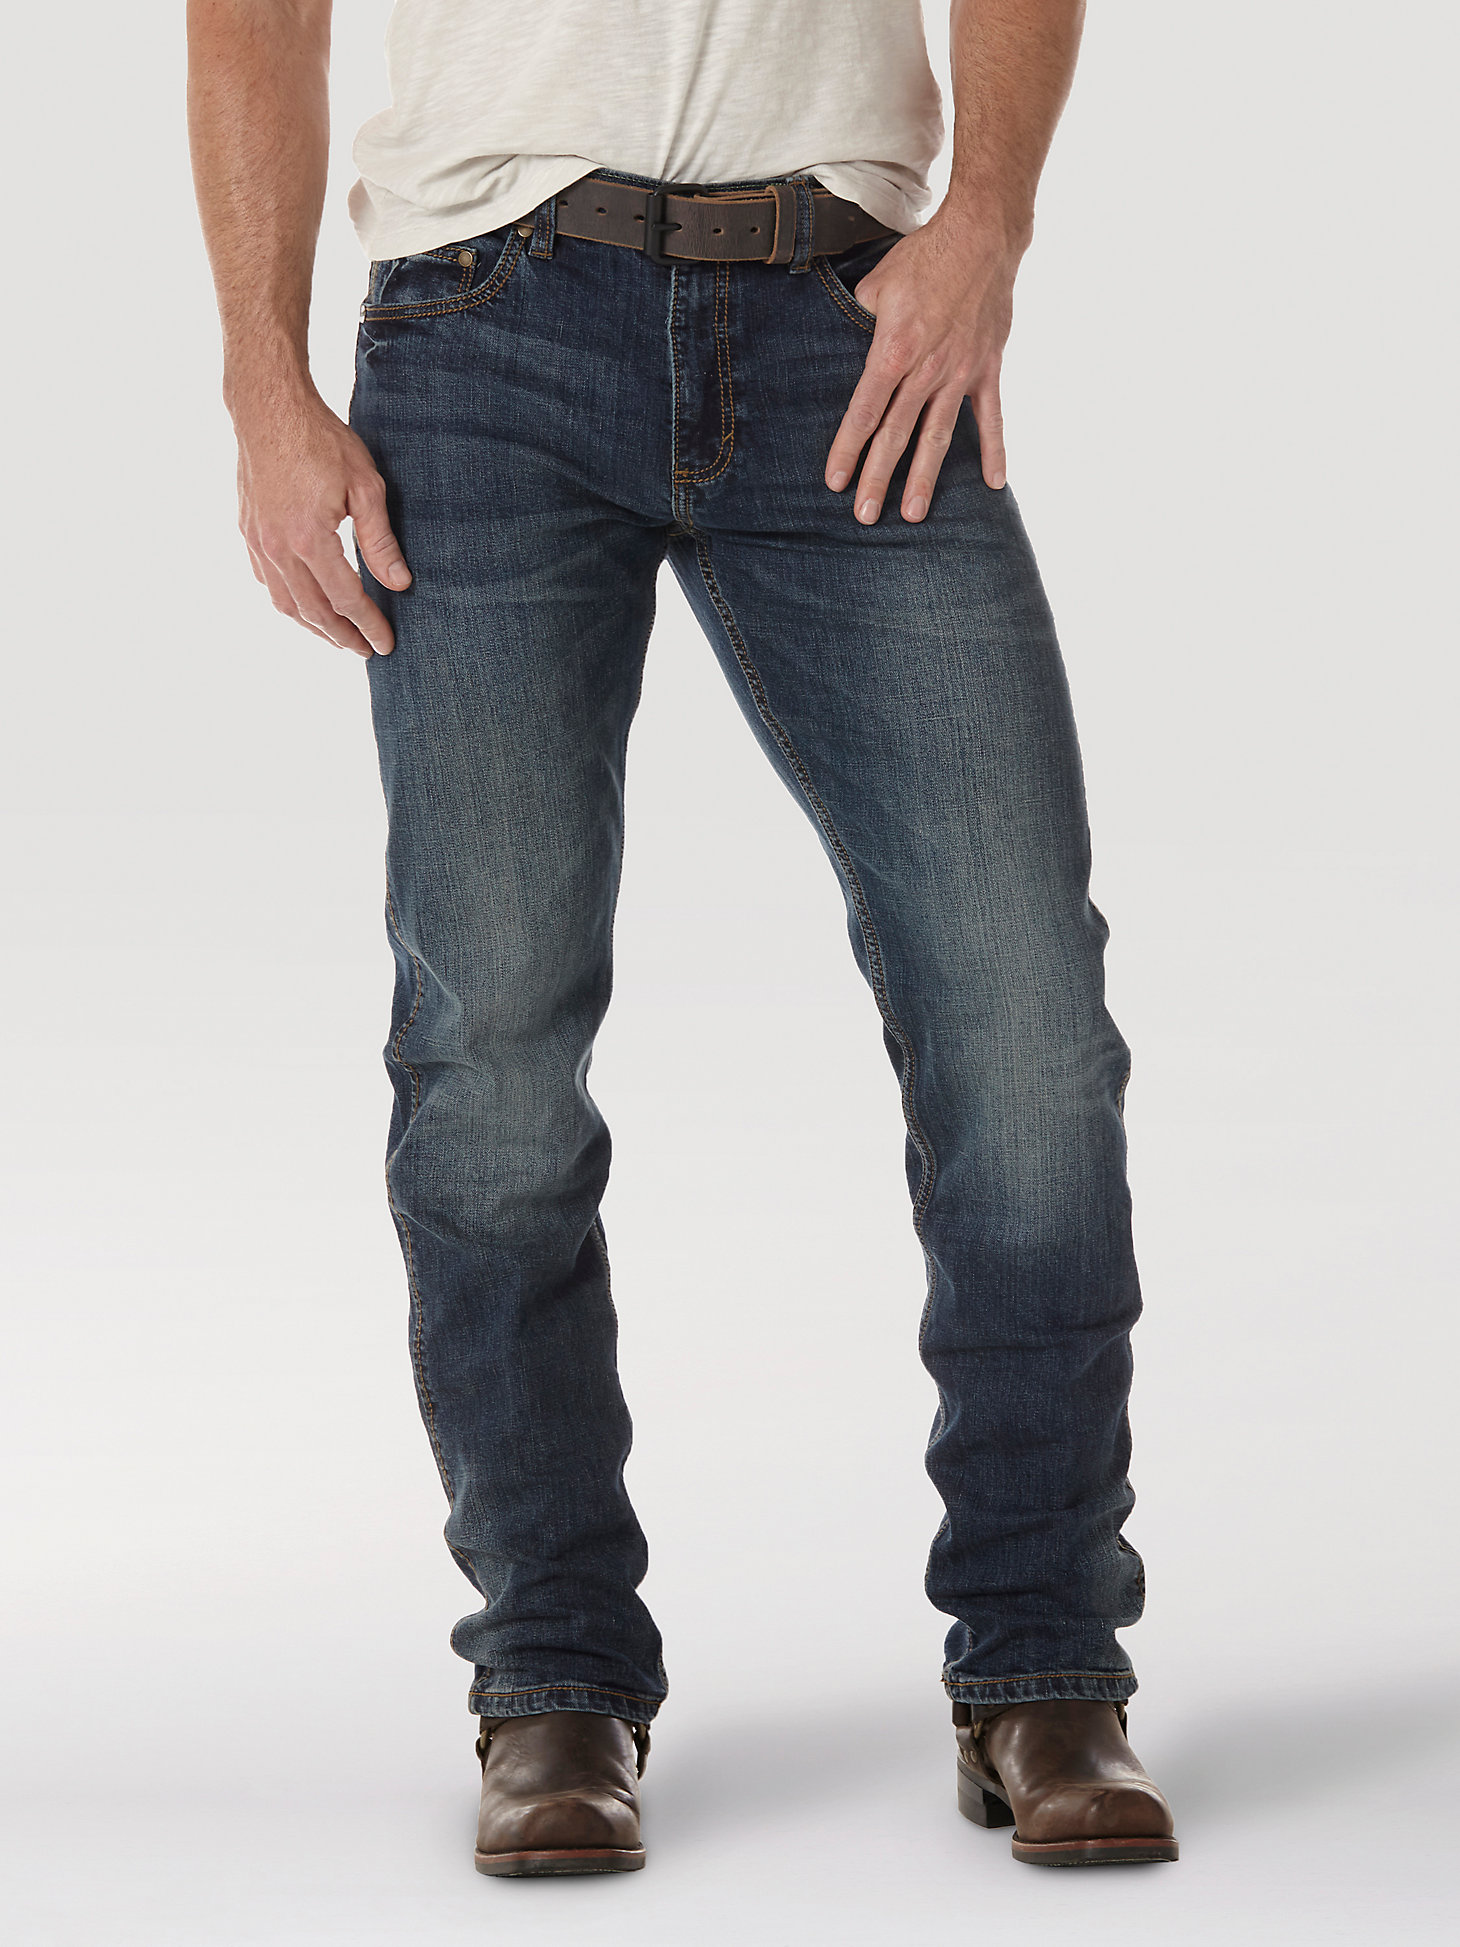 Men's Wrangler Retro® Slim Fit Straight Leg Jean in Bozeman alternative view 5